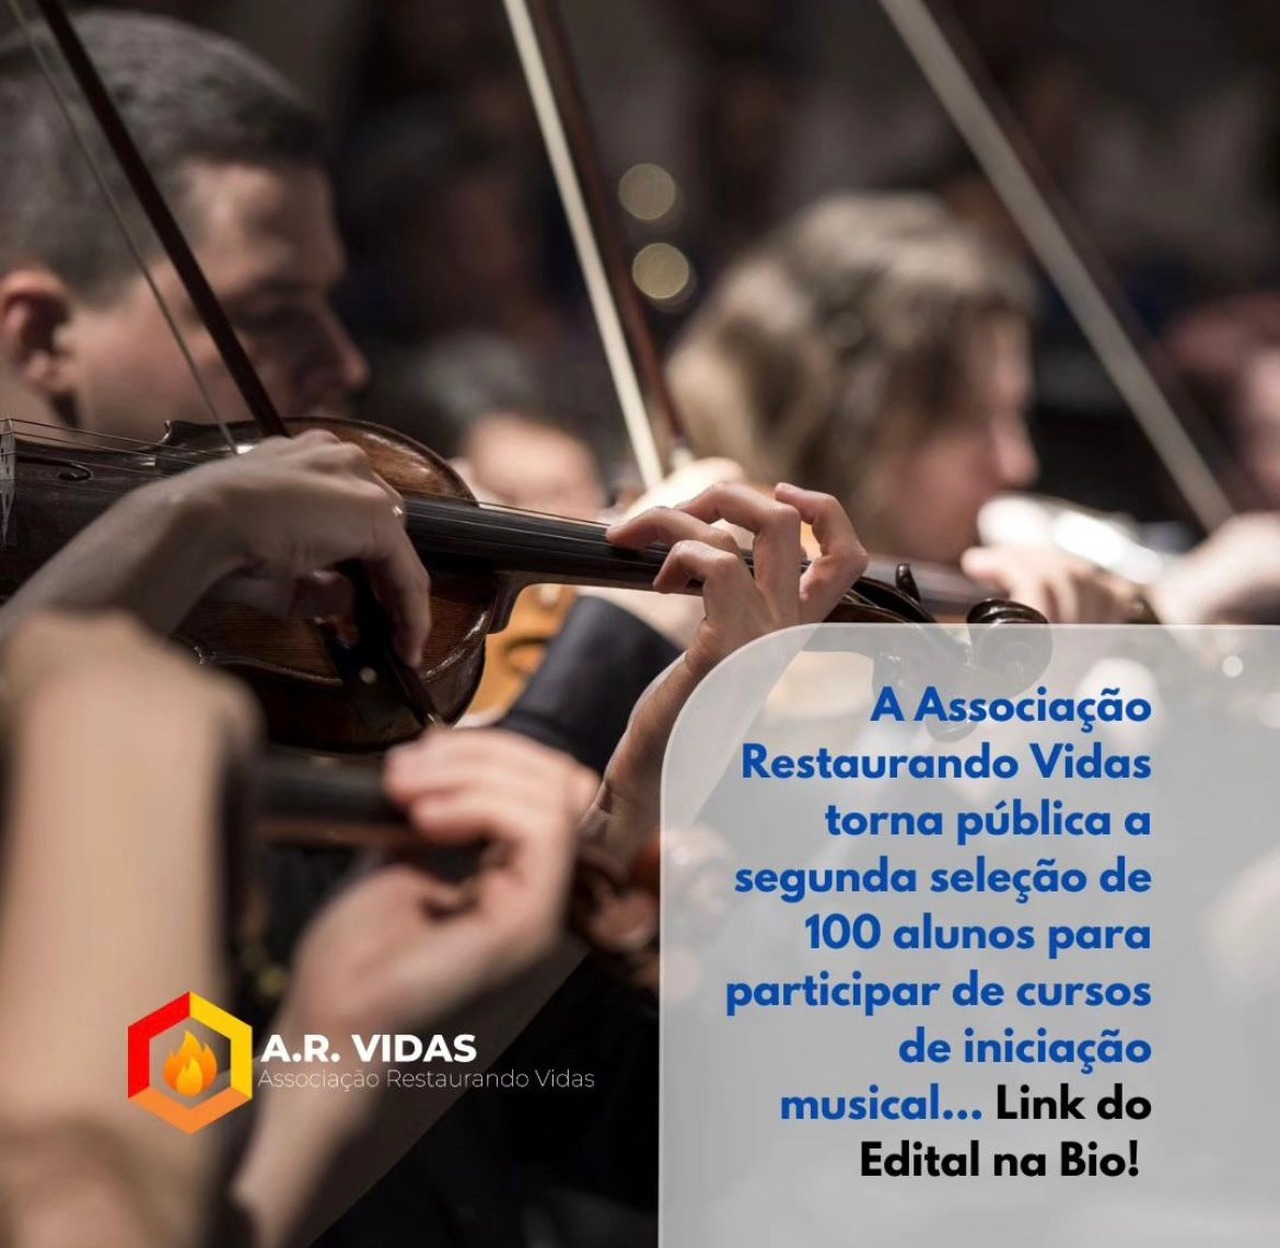 Associação Restaurando Vidas abre 100 vagas para curso de iniciação musical gratuito; veja como participar